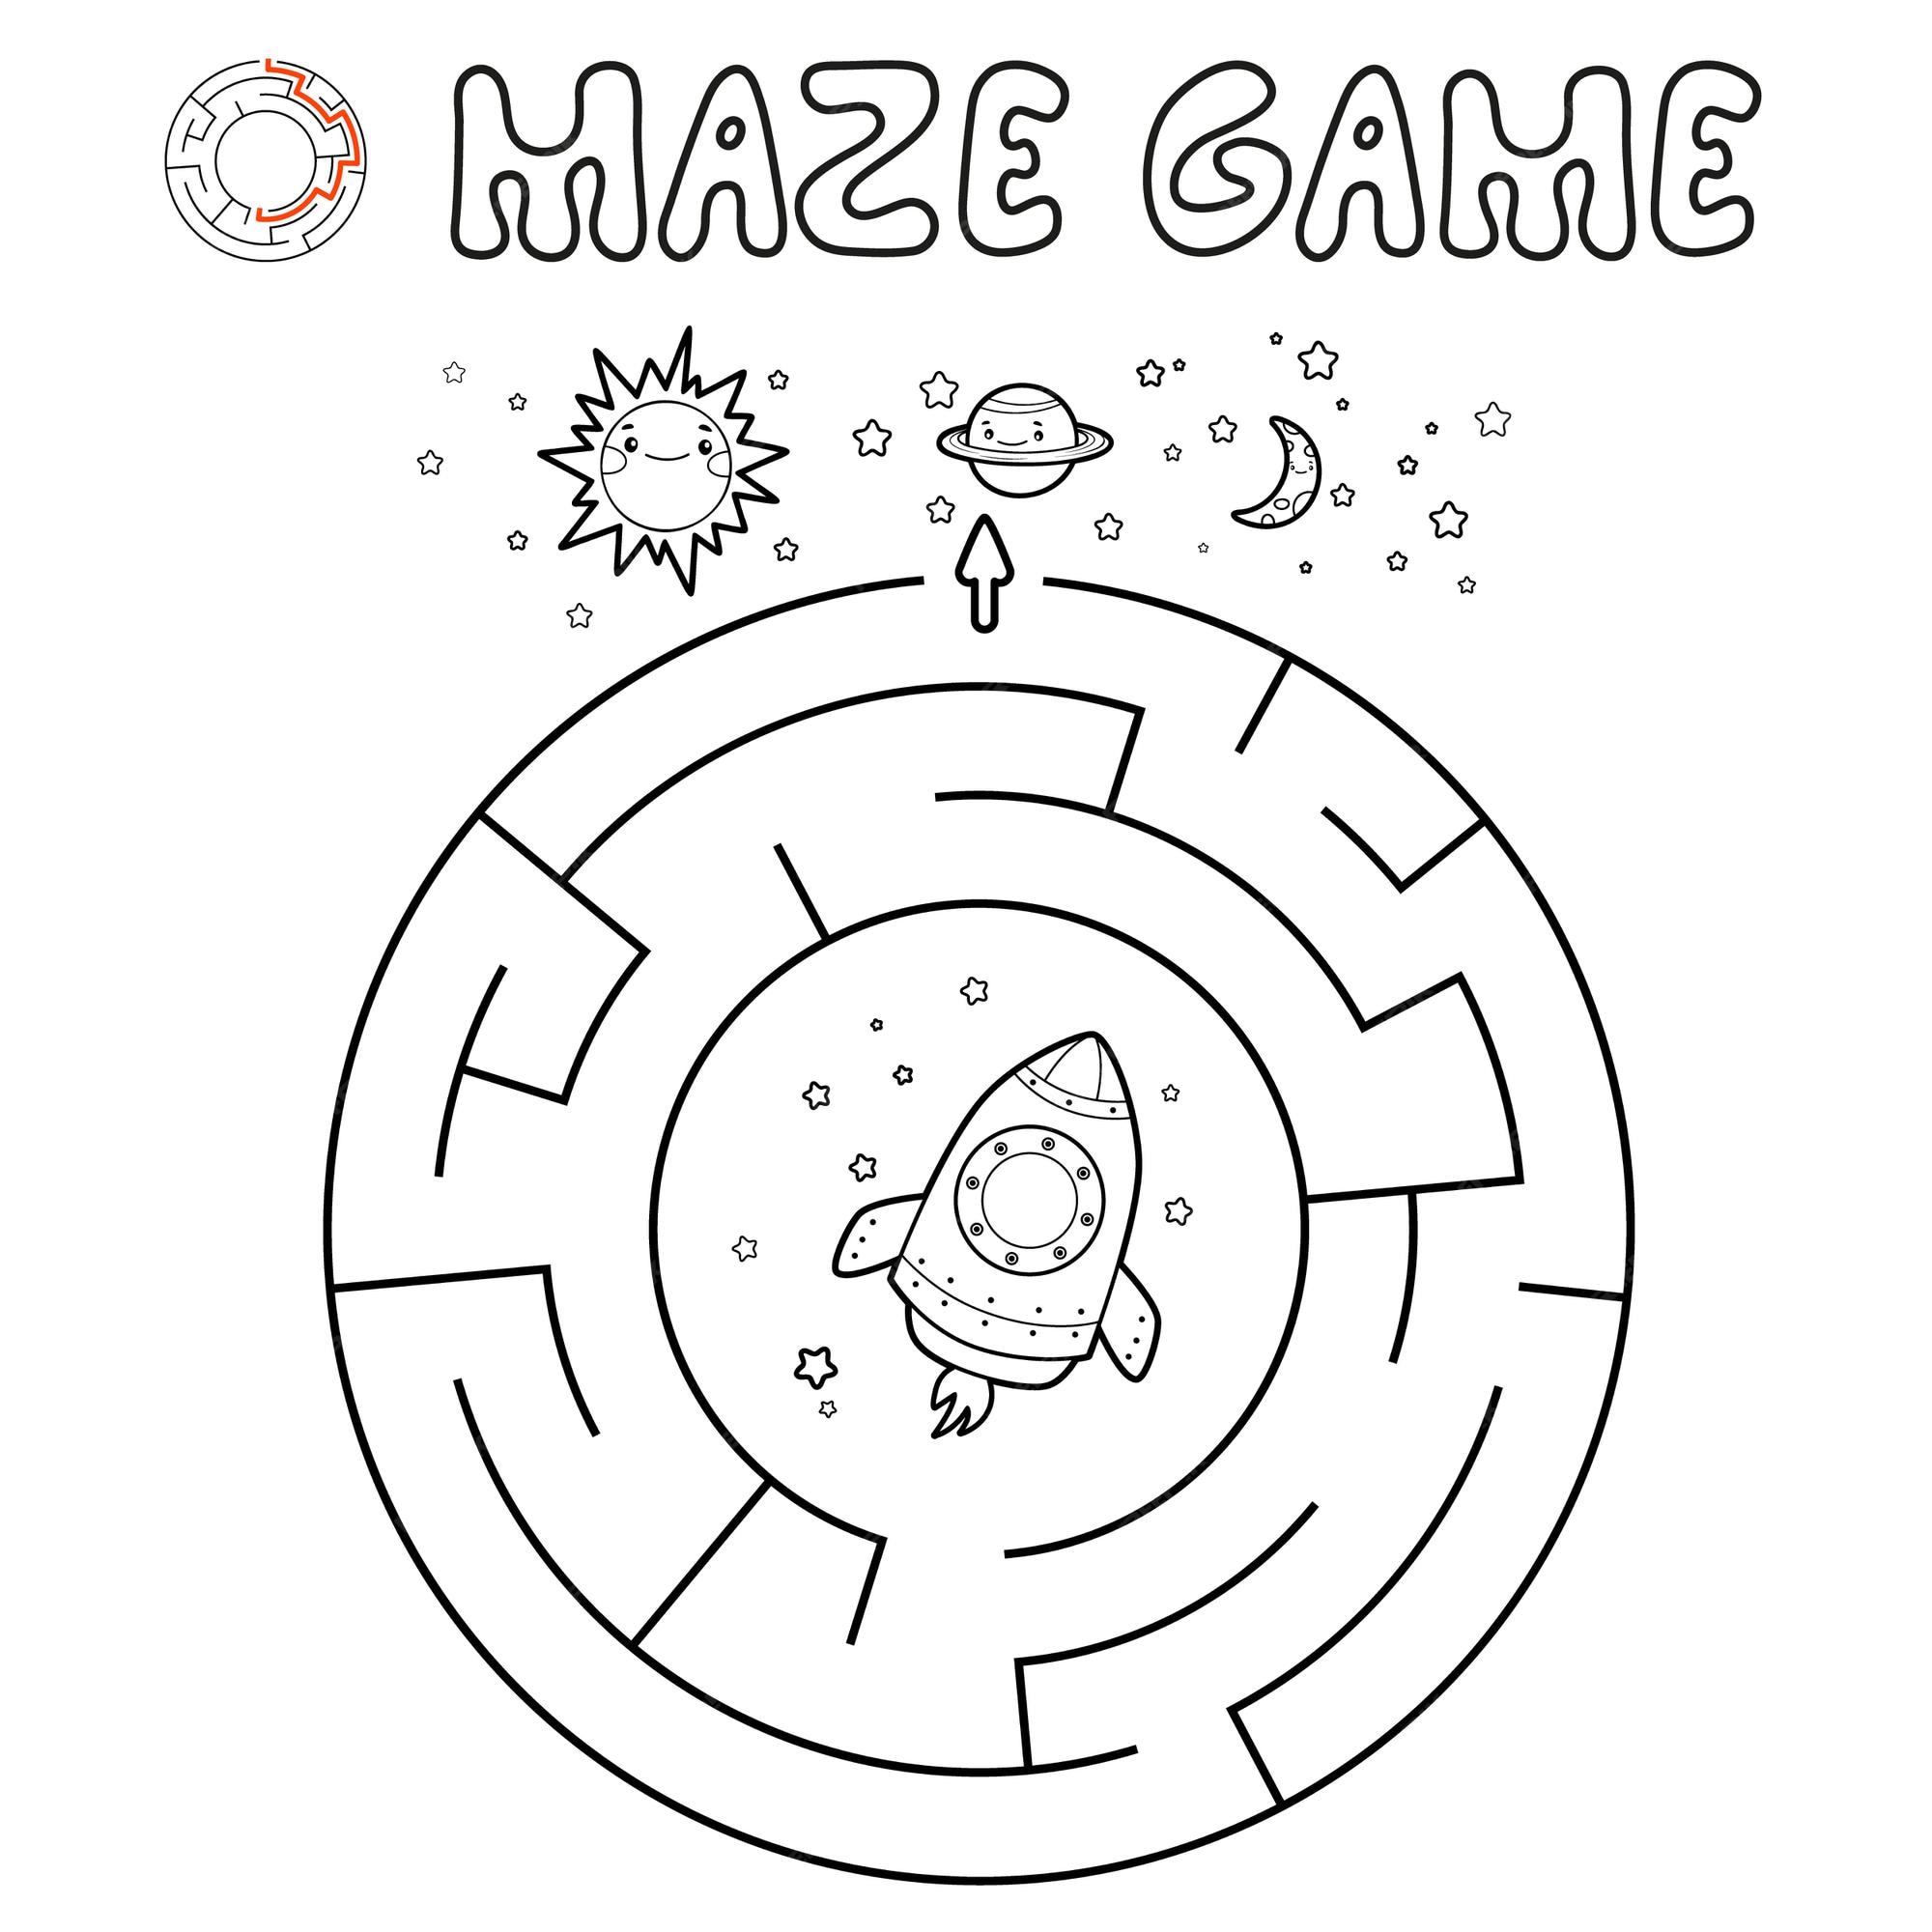 Jogos de labirinto online para crianças: Foguete